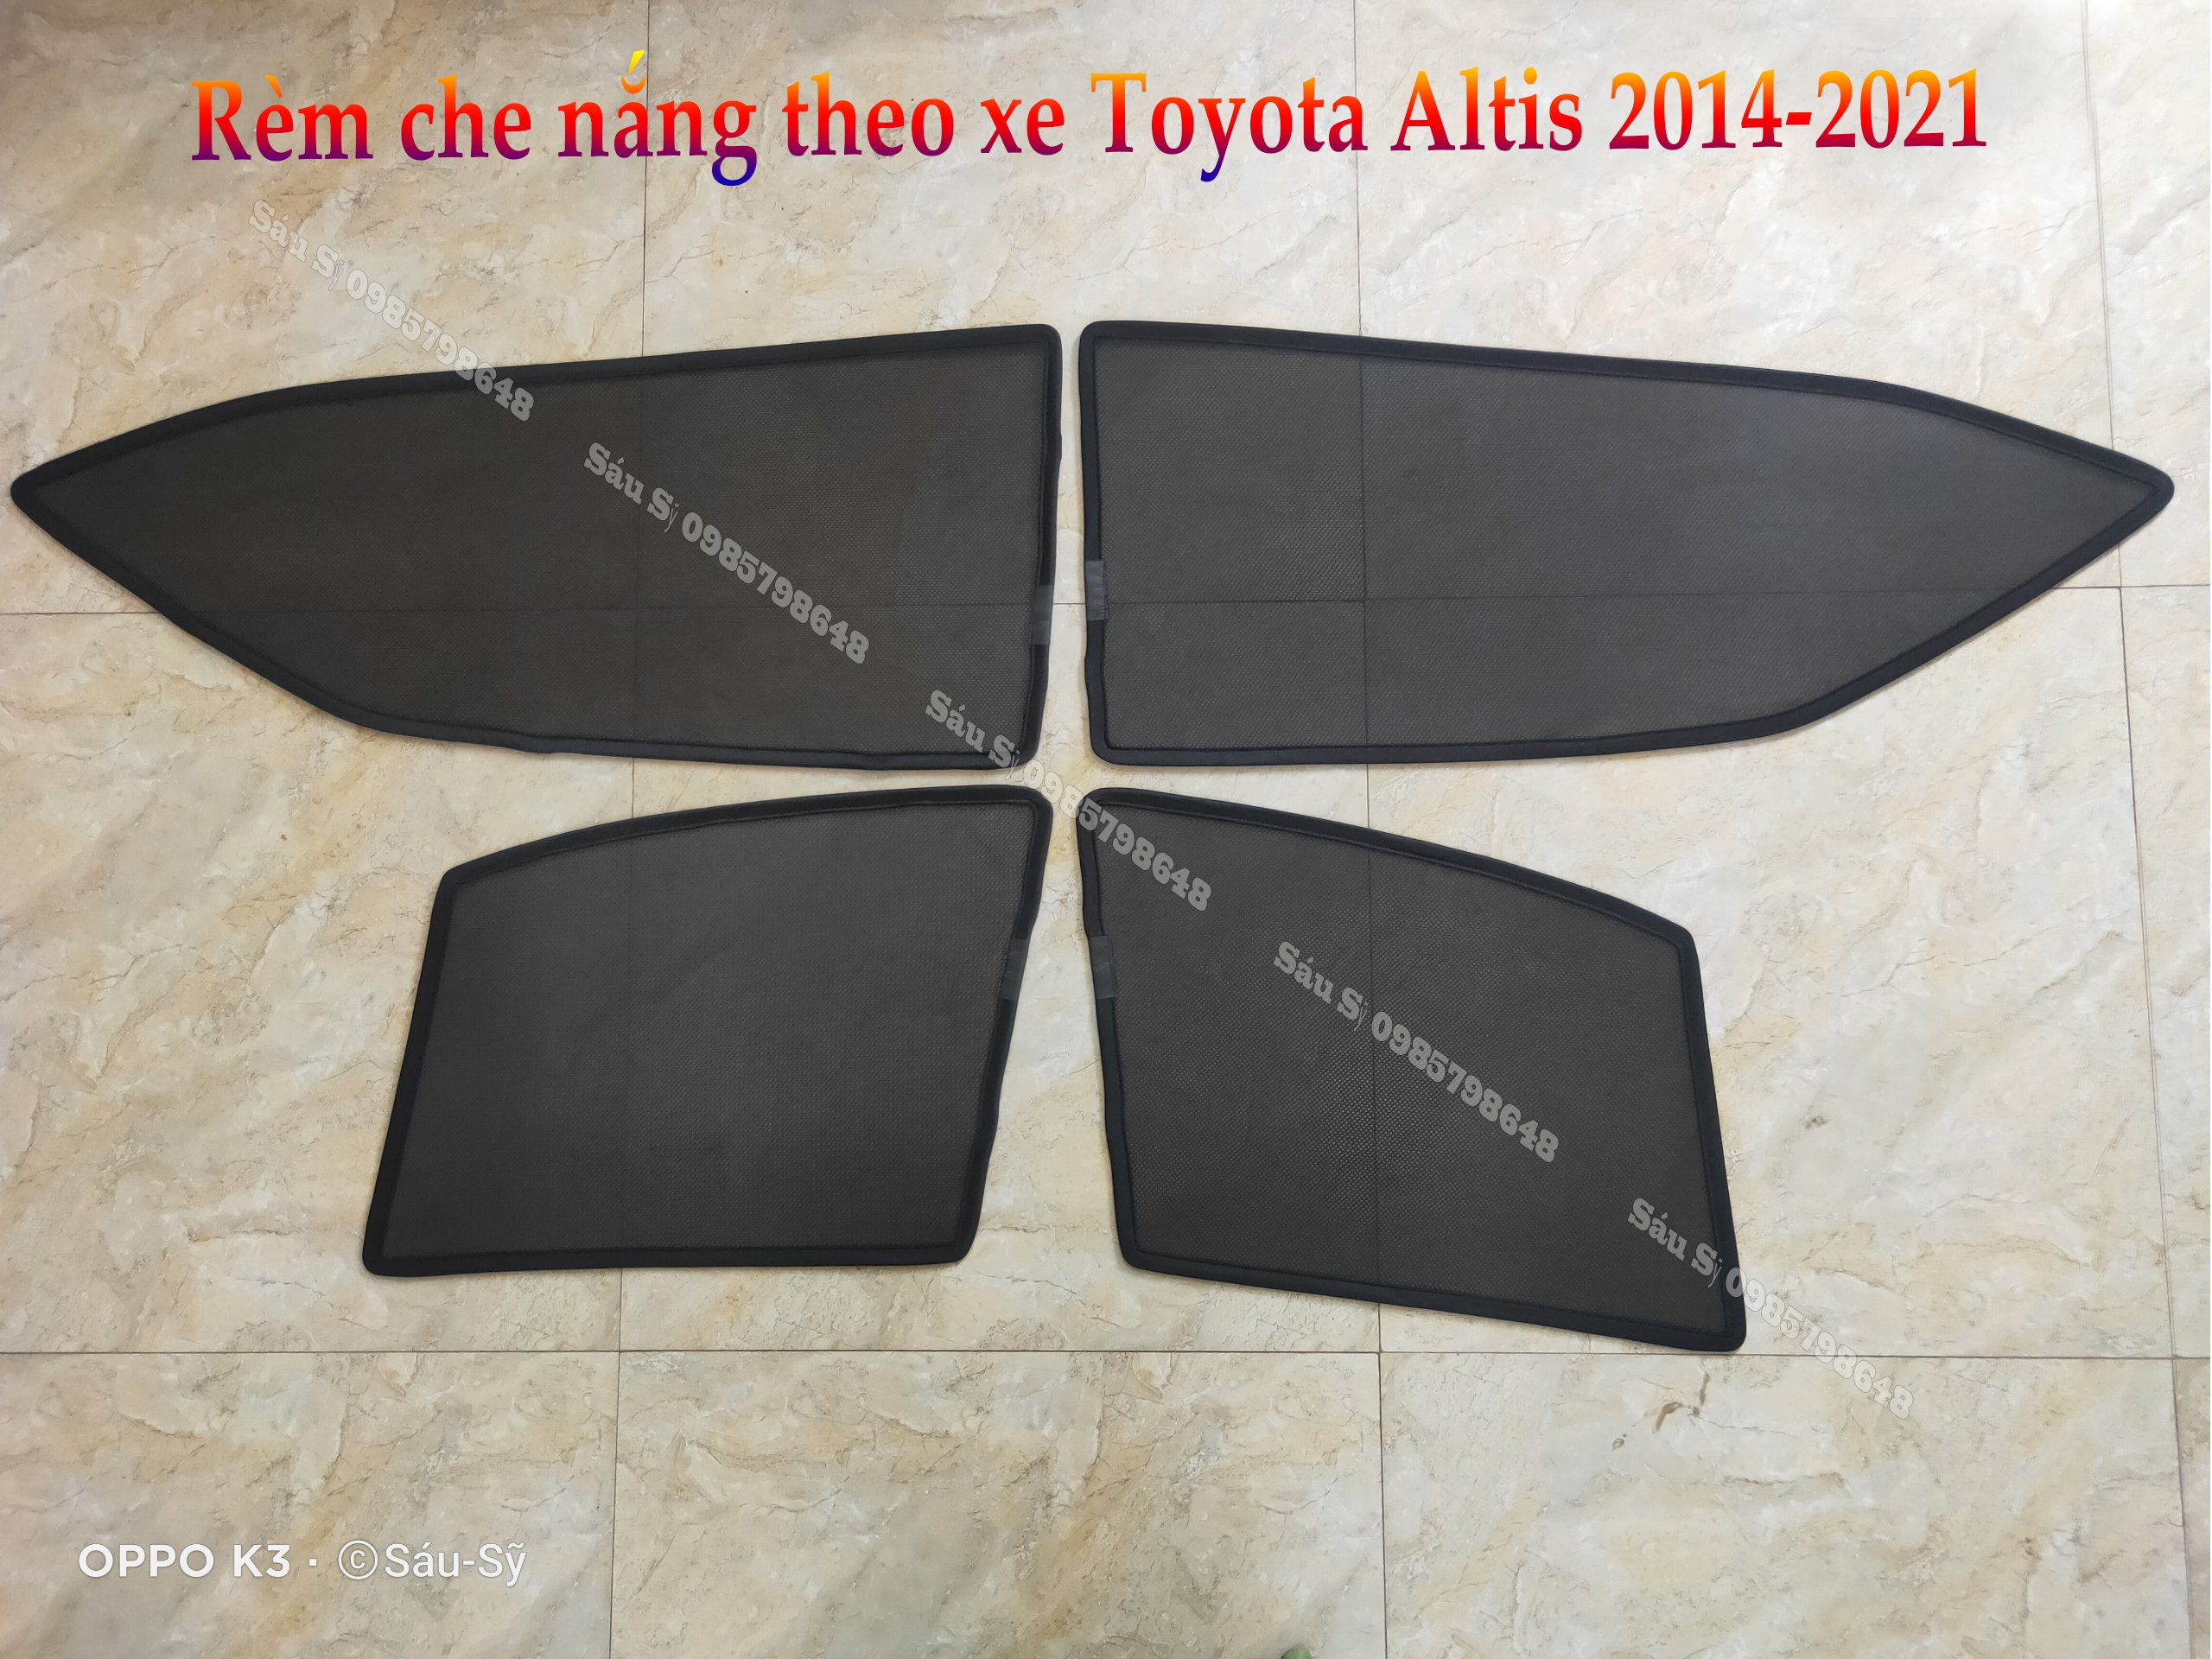 Bộ 4 tấm Rèm che nắng theo xe ô tô Toyota ALTIS 2014-2021, Tấm che nắng ô tô nam châm tự dính